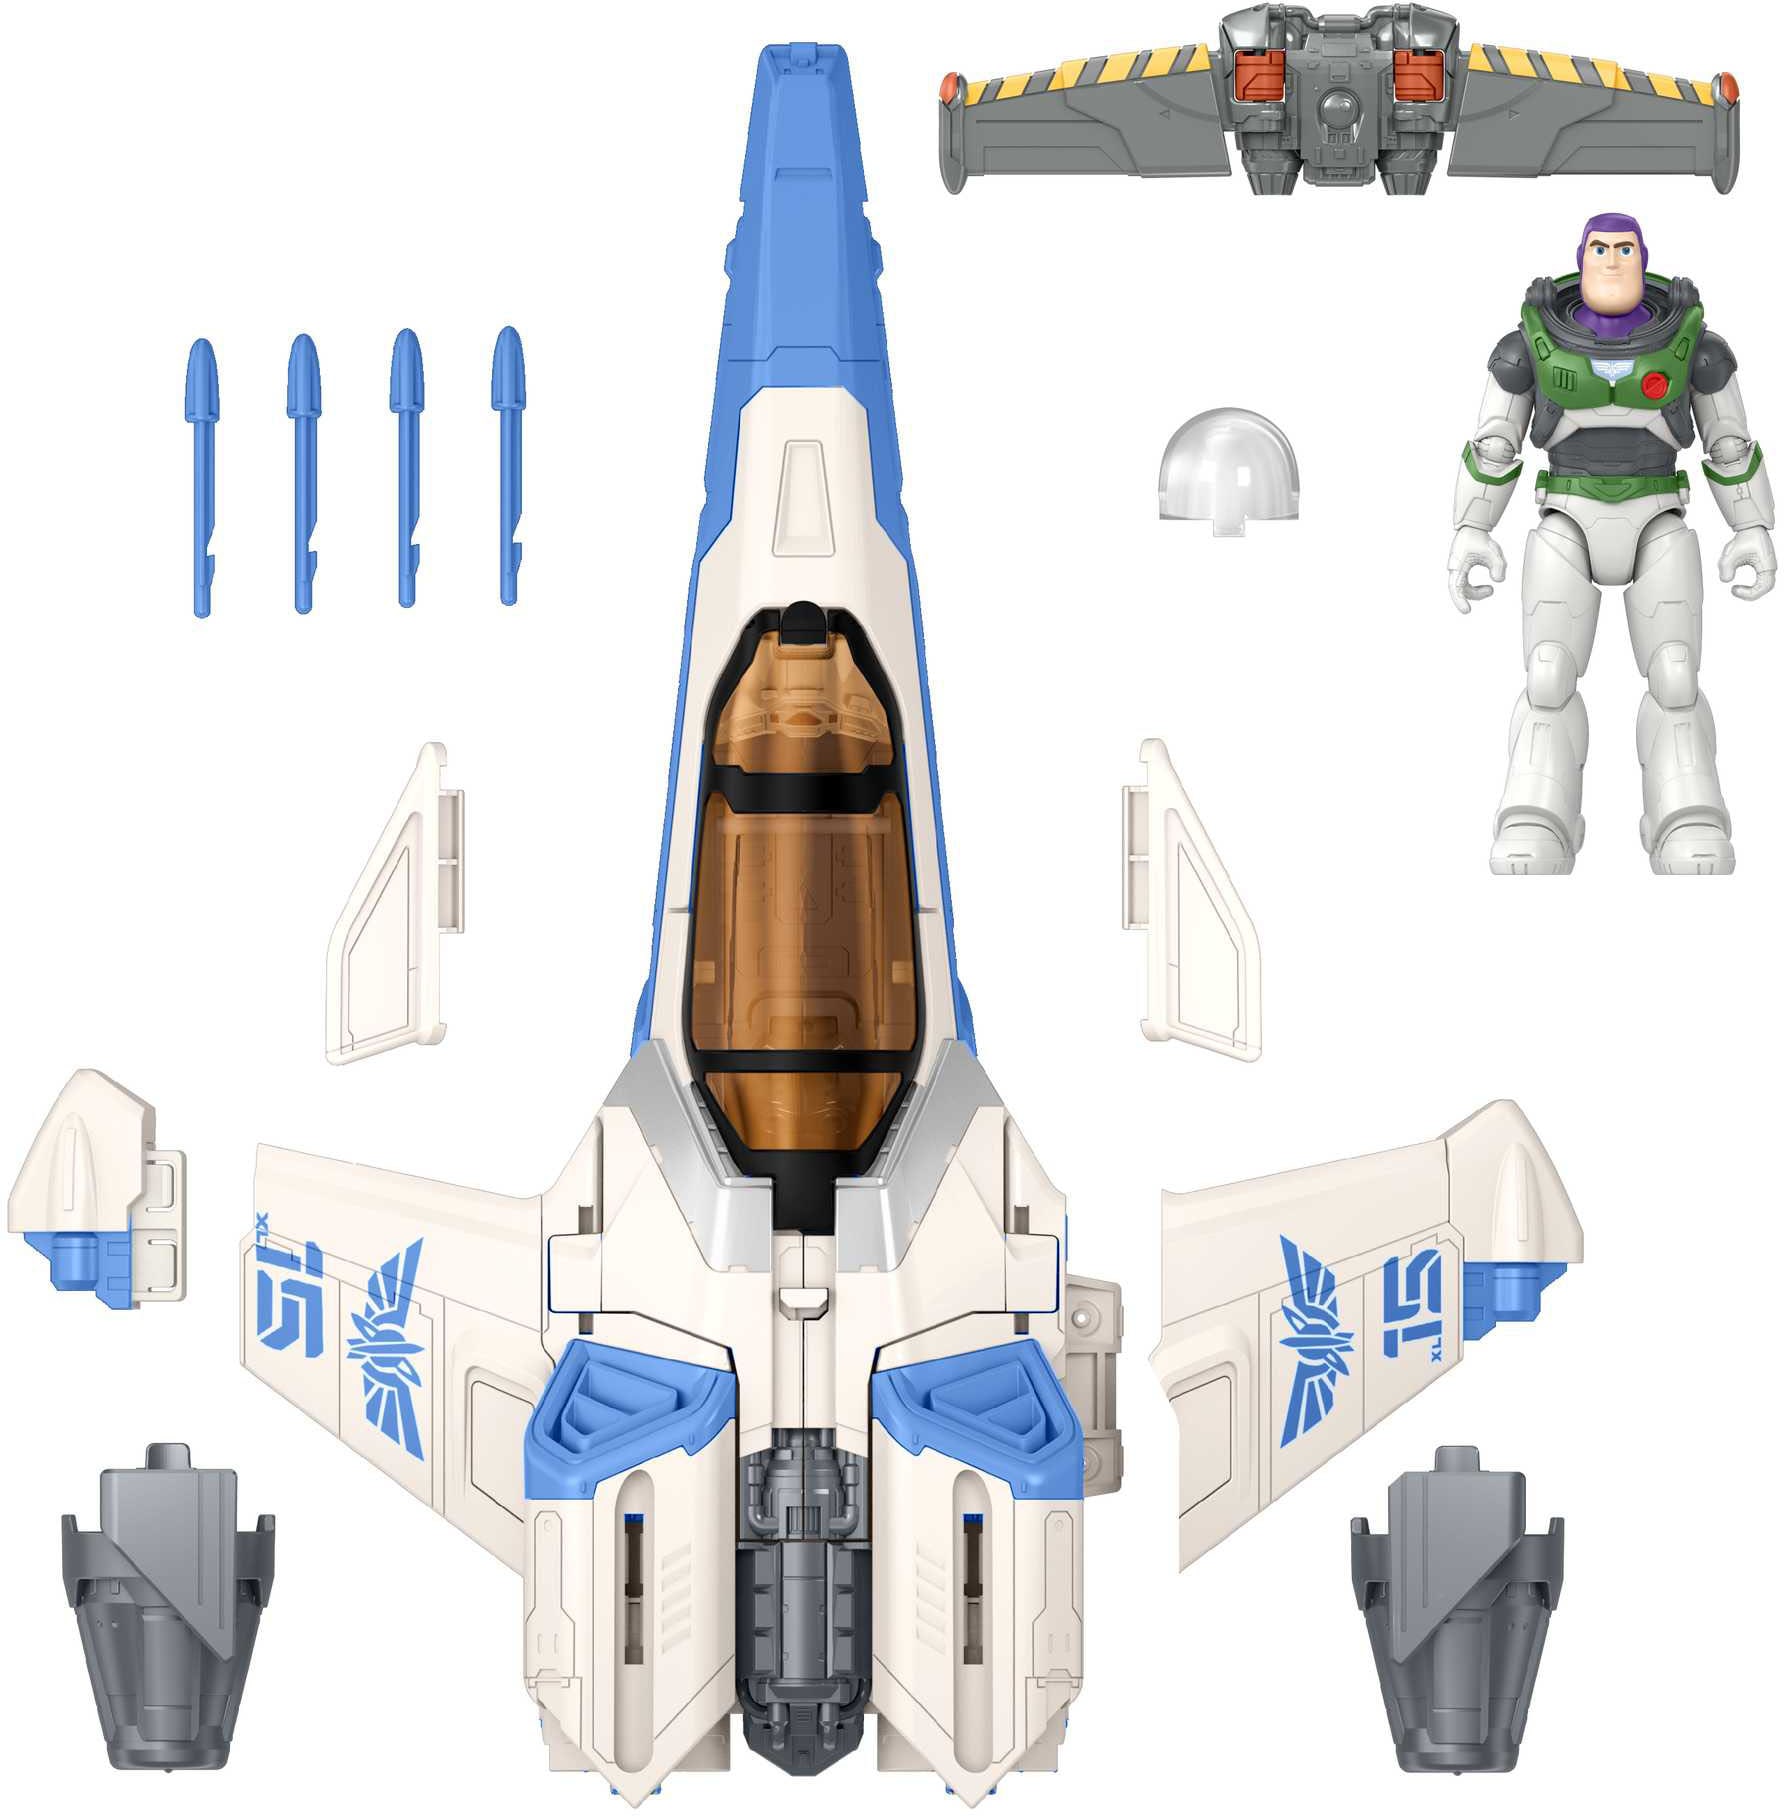 Mattel® Spielzeug-Flugrakete »Disney und Pixar Lightyear Blast und Battle XL-15«, 50 cm langes Raumschiff